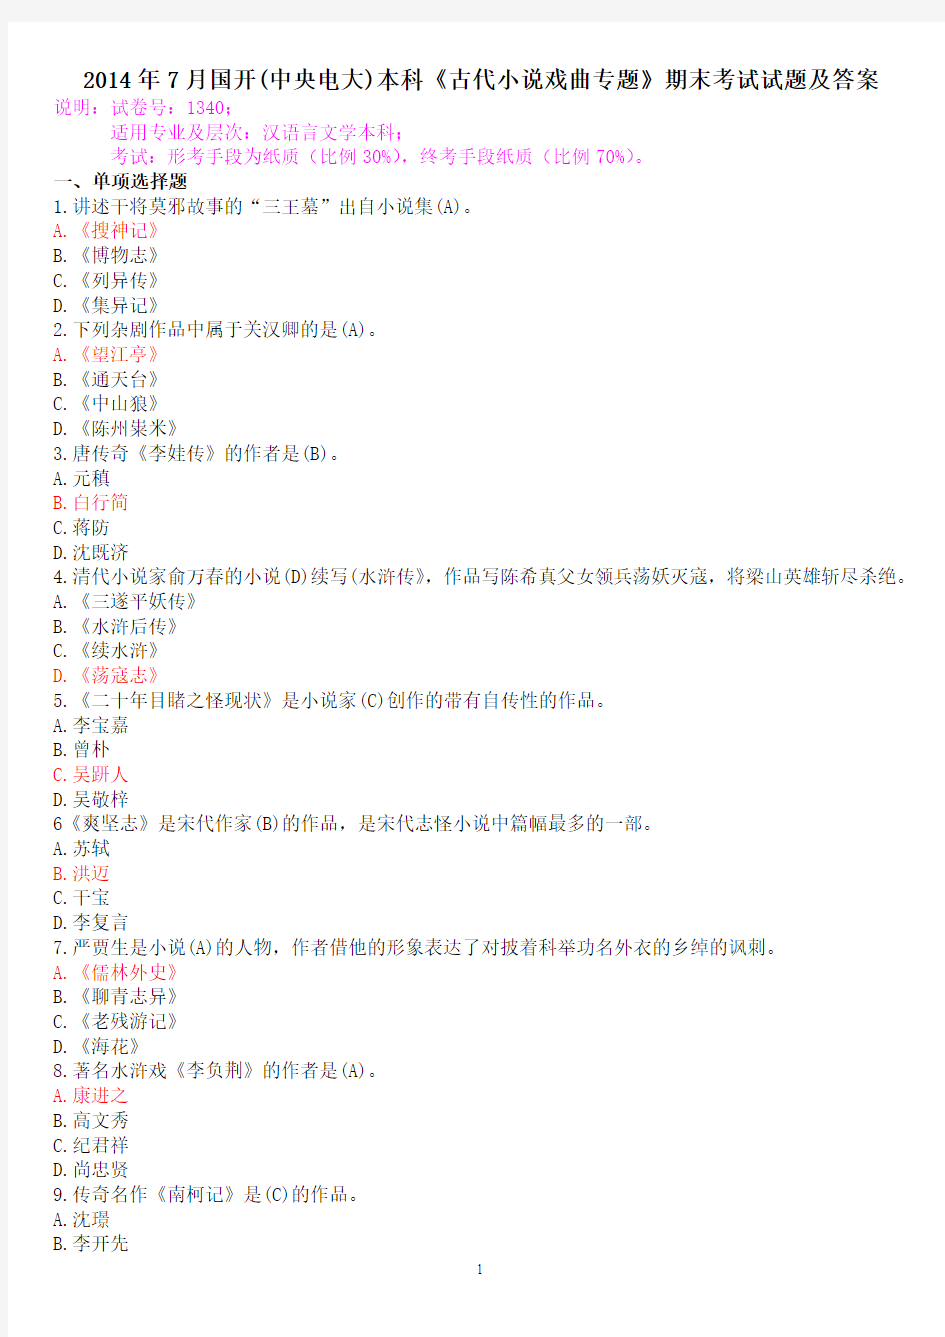 2014年7月国开(中央电大)汉语言文学本科《古代小说戏曲专题》期末考试试题及答案